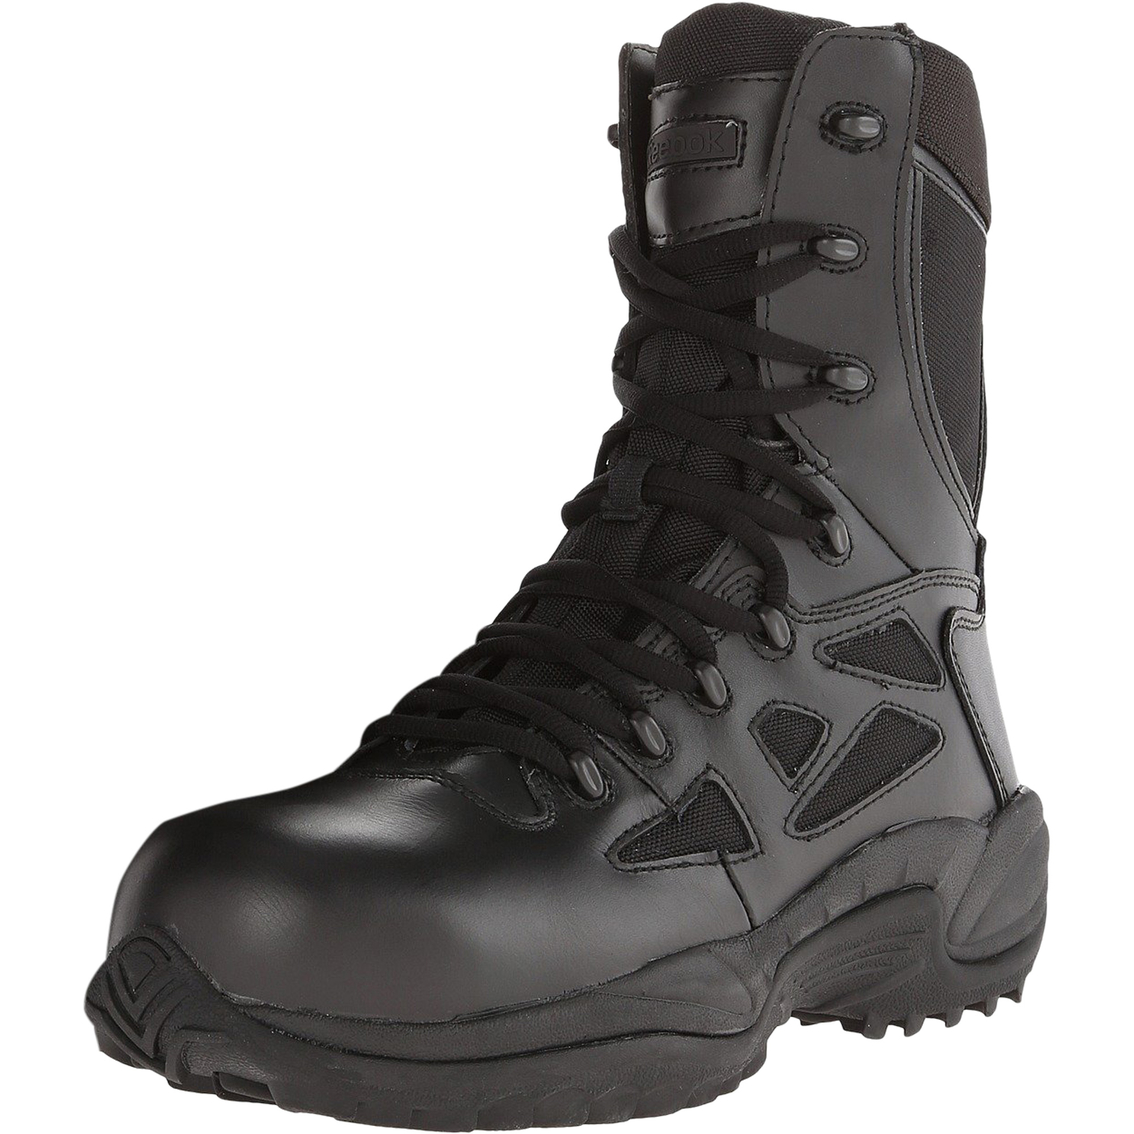 Reebok Rapid Response Rb8874 Boots | Men's Shoes | Shoes | Shop The ...